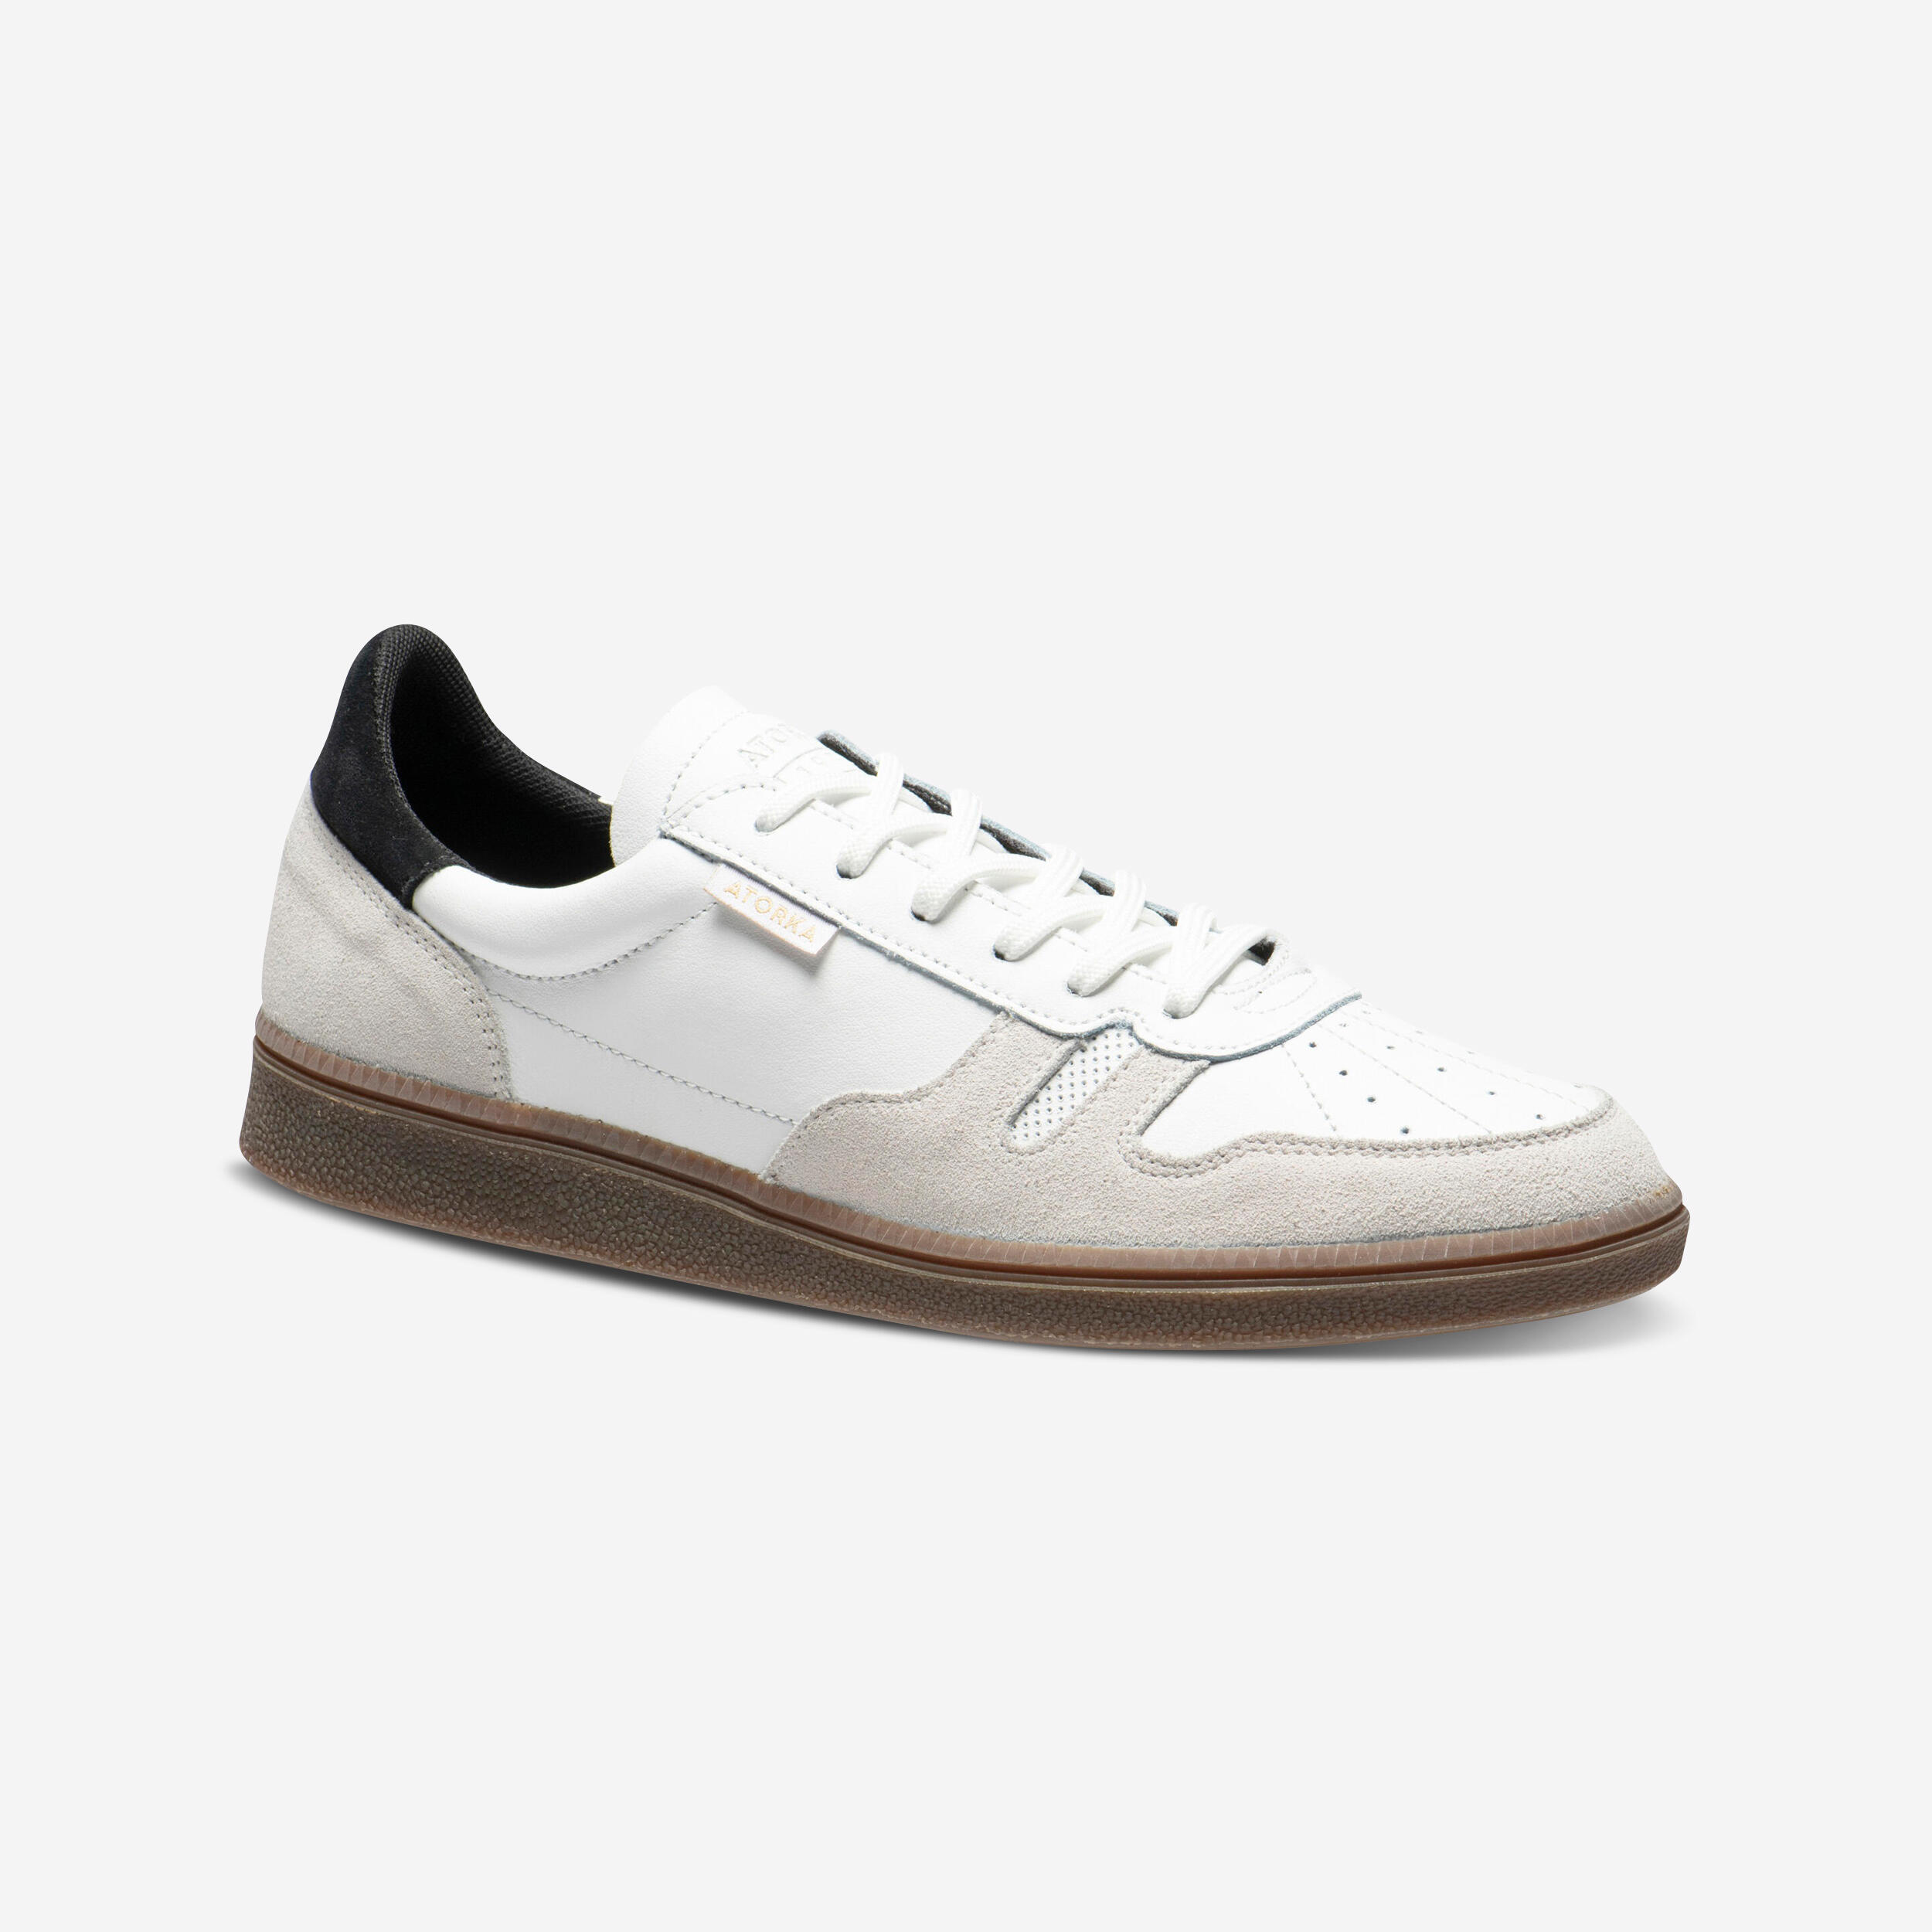 Men's/Women's Handball Goalkeeper Shoes GK500 - White/Black 1/19